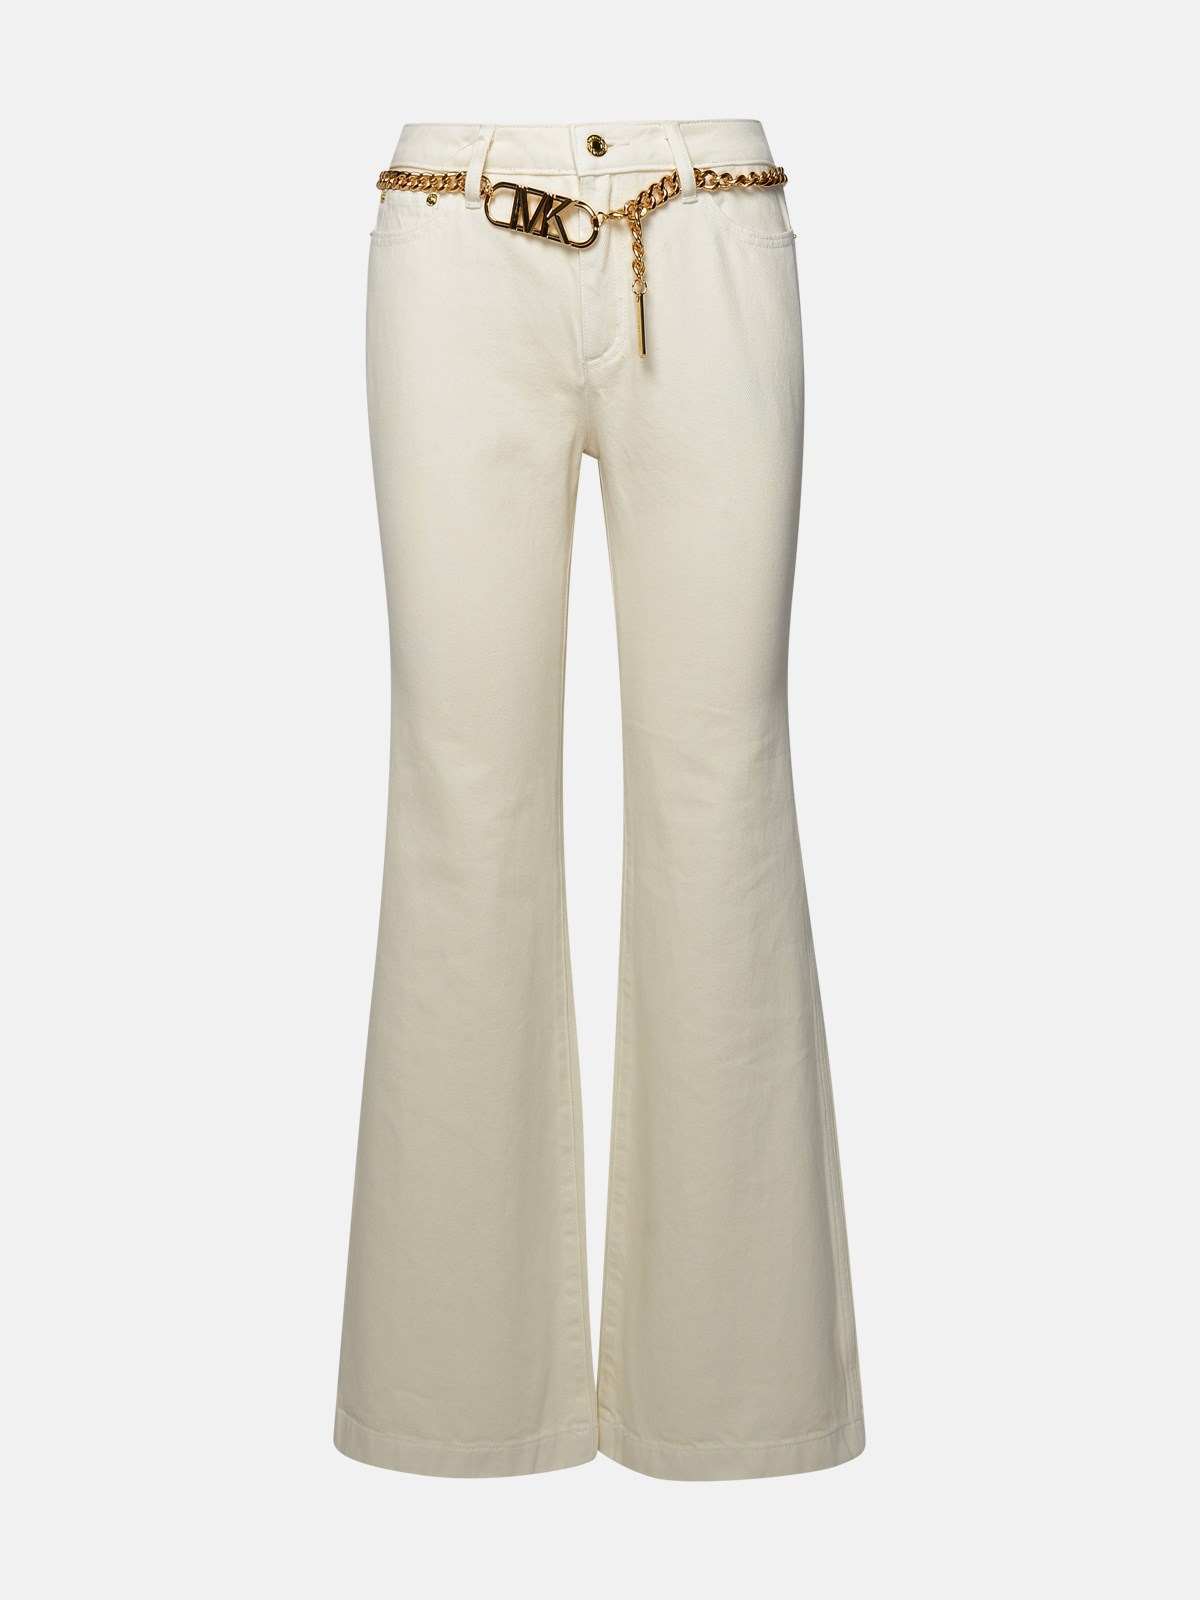 Michael Michael Kors Ivory Cotton Jeans